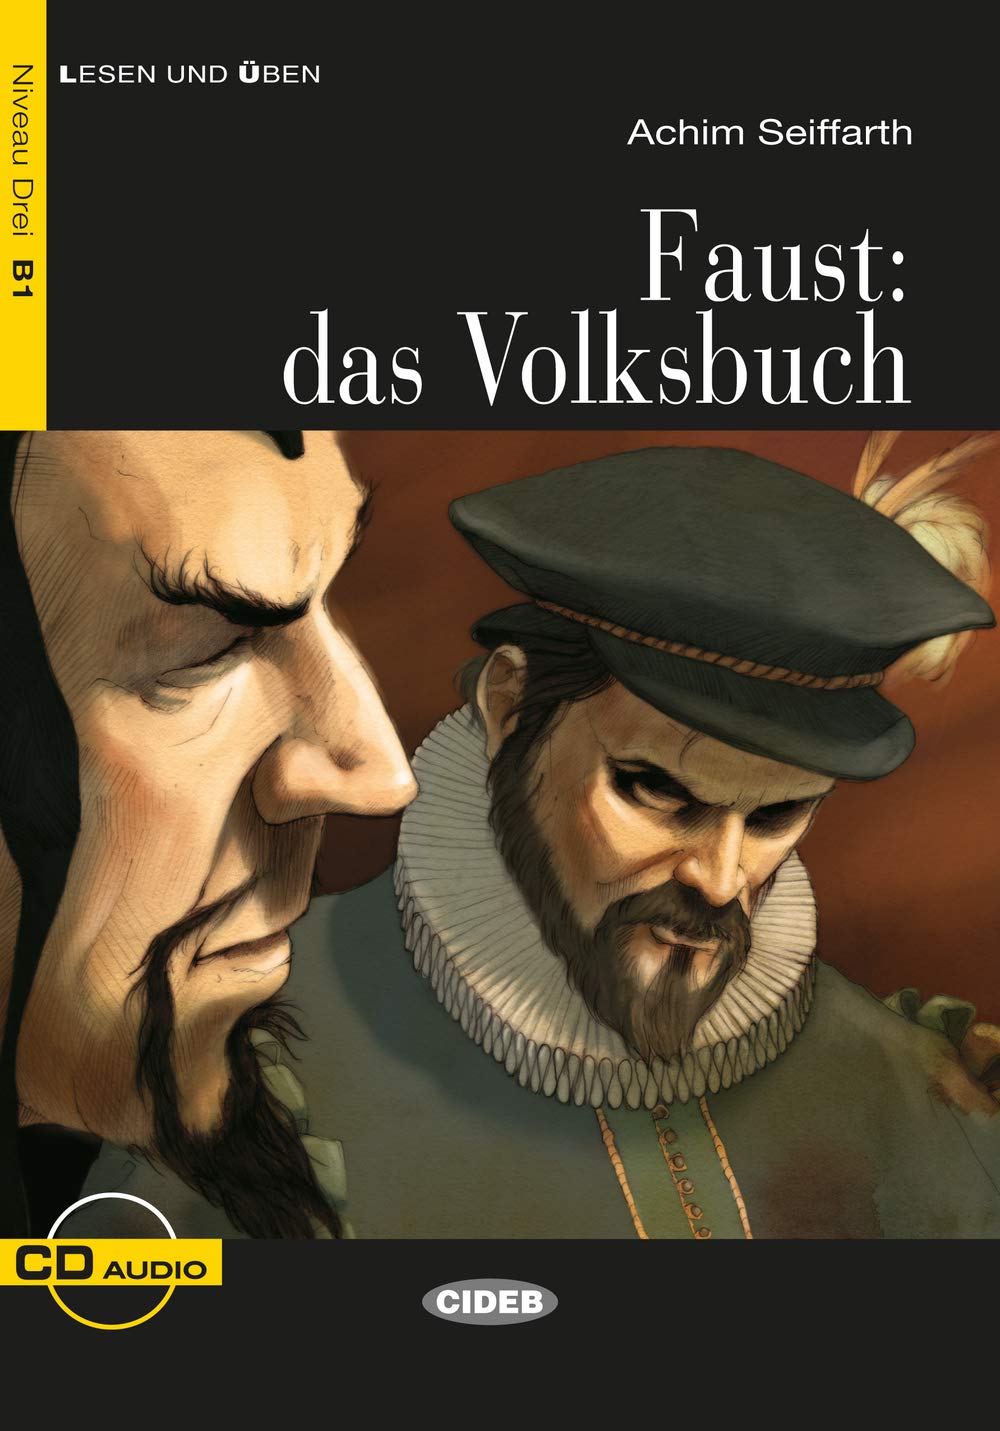 Achim Seiffarth Lesen und Uben Niveau Drei (B1): Faust: das Volksbuch + CD 